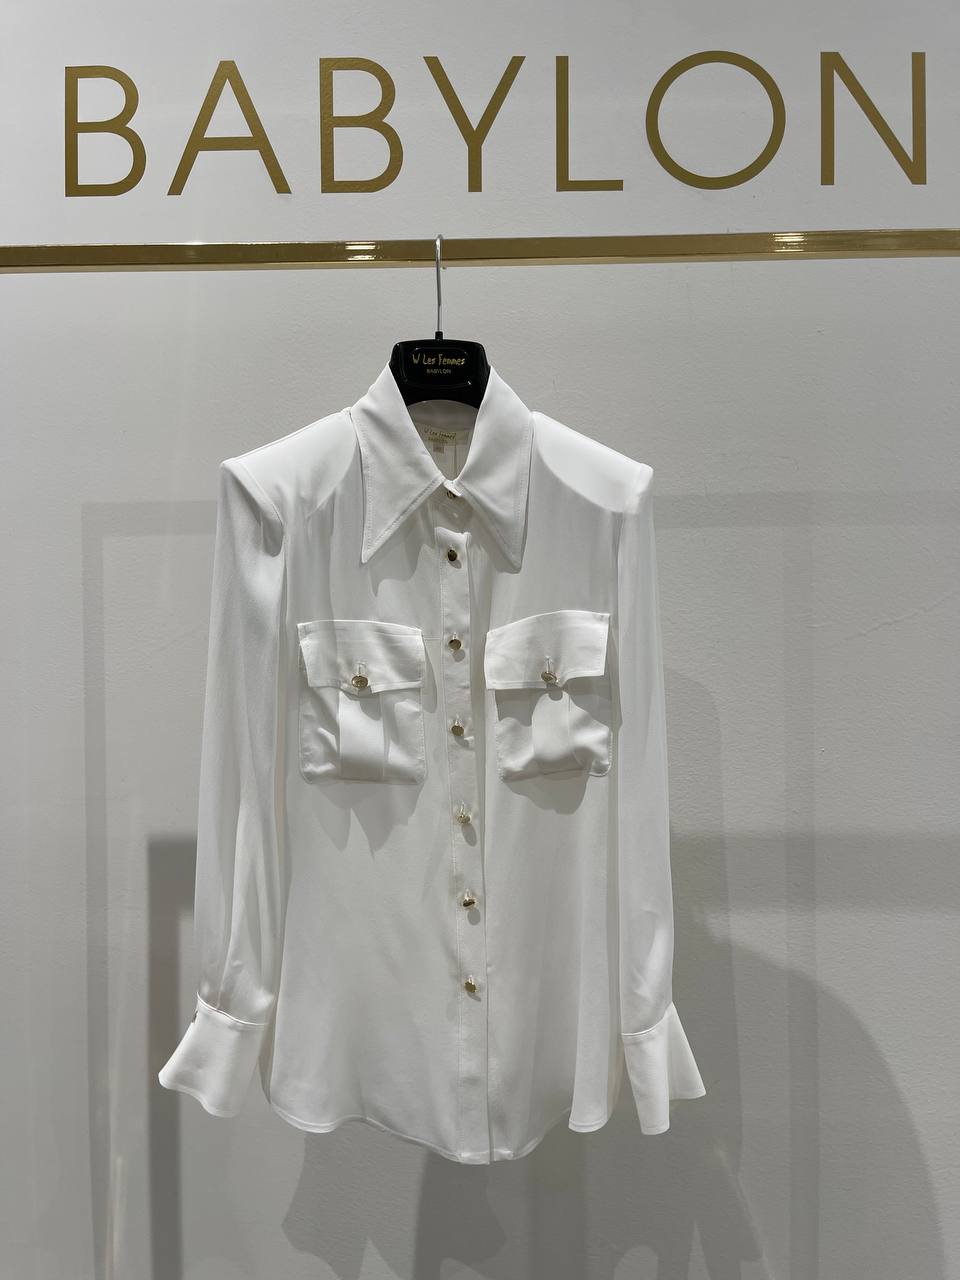 Итальянская одежда, бренд Babylon, арт. 73262239